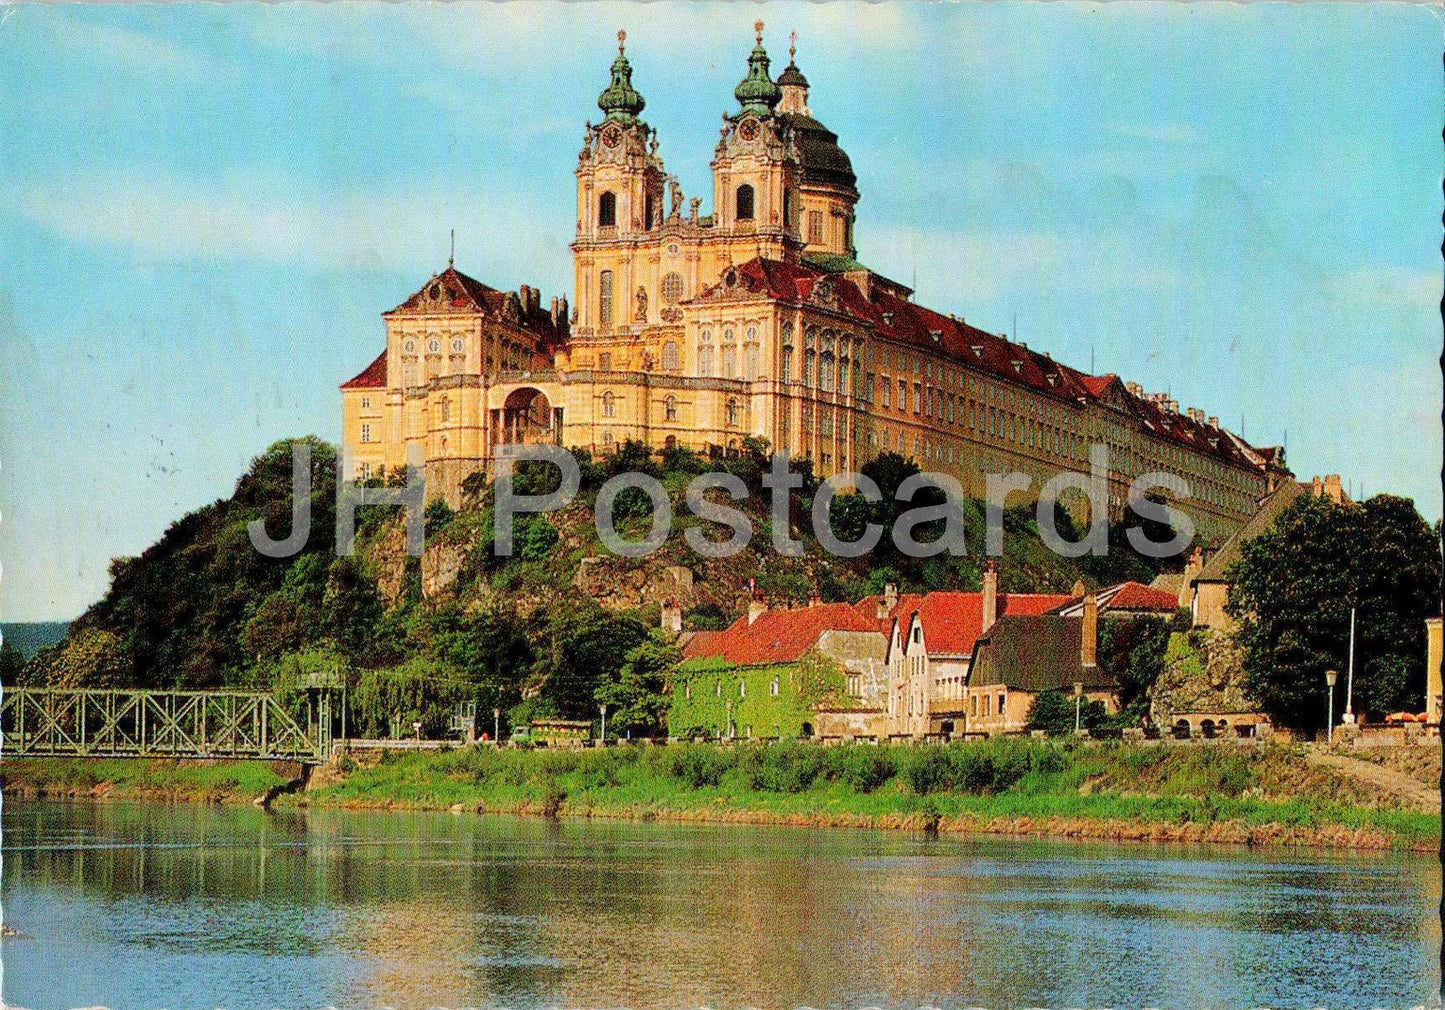 Benediktinerstift Melk ad Donau - Wachau - 76382 - Autriche - occasion 